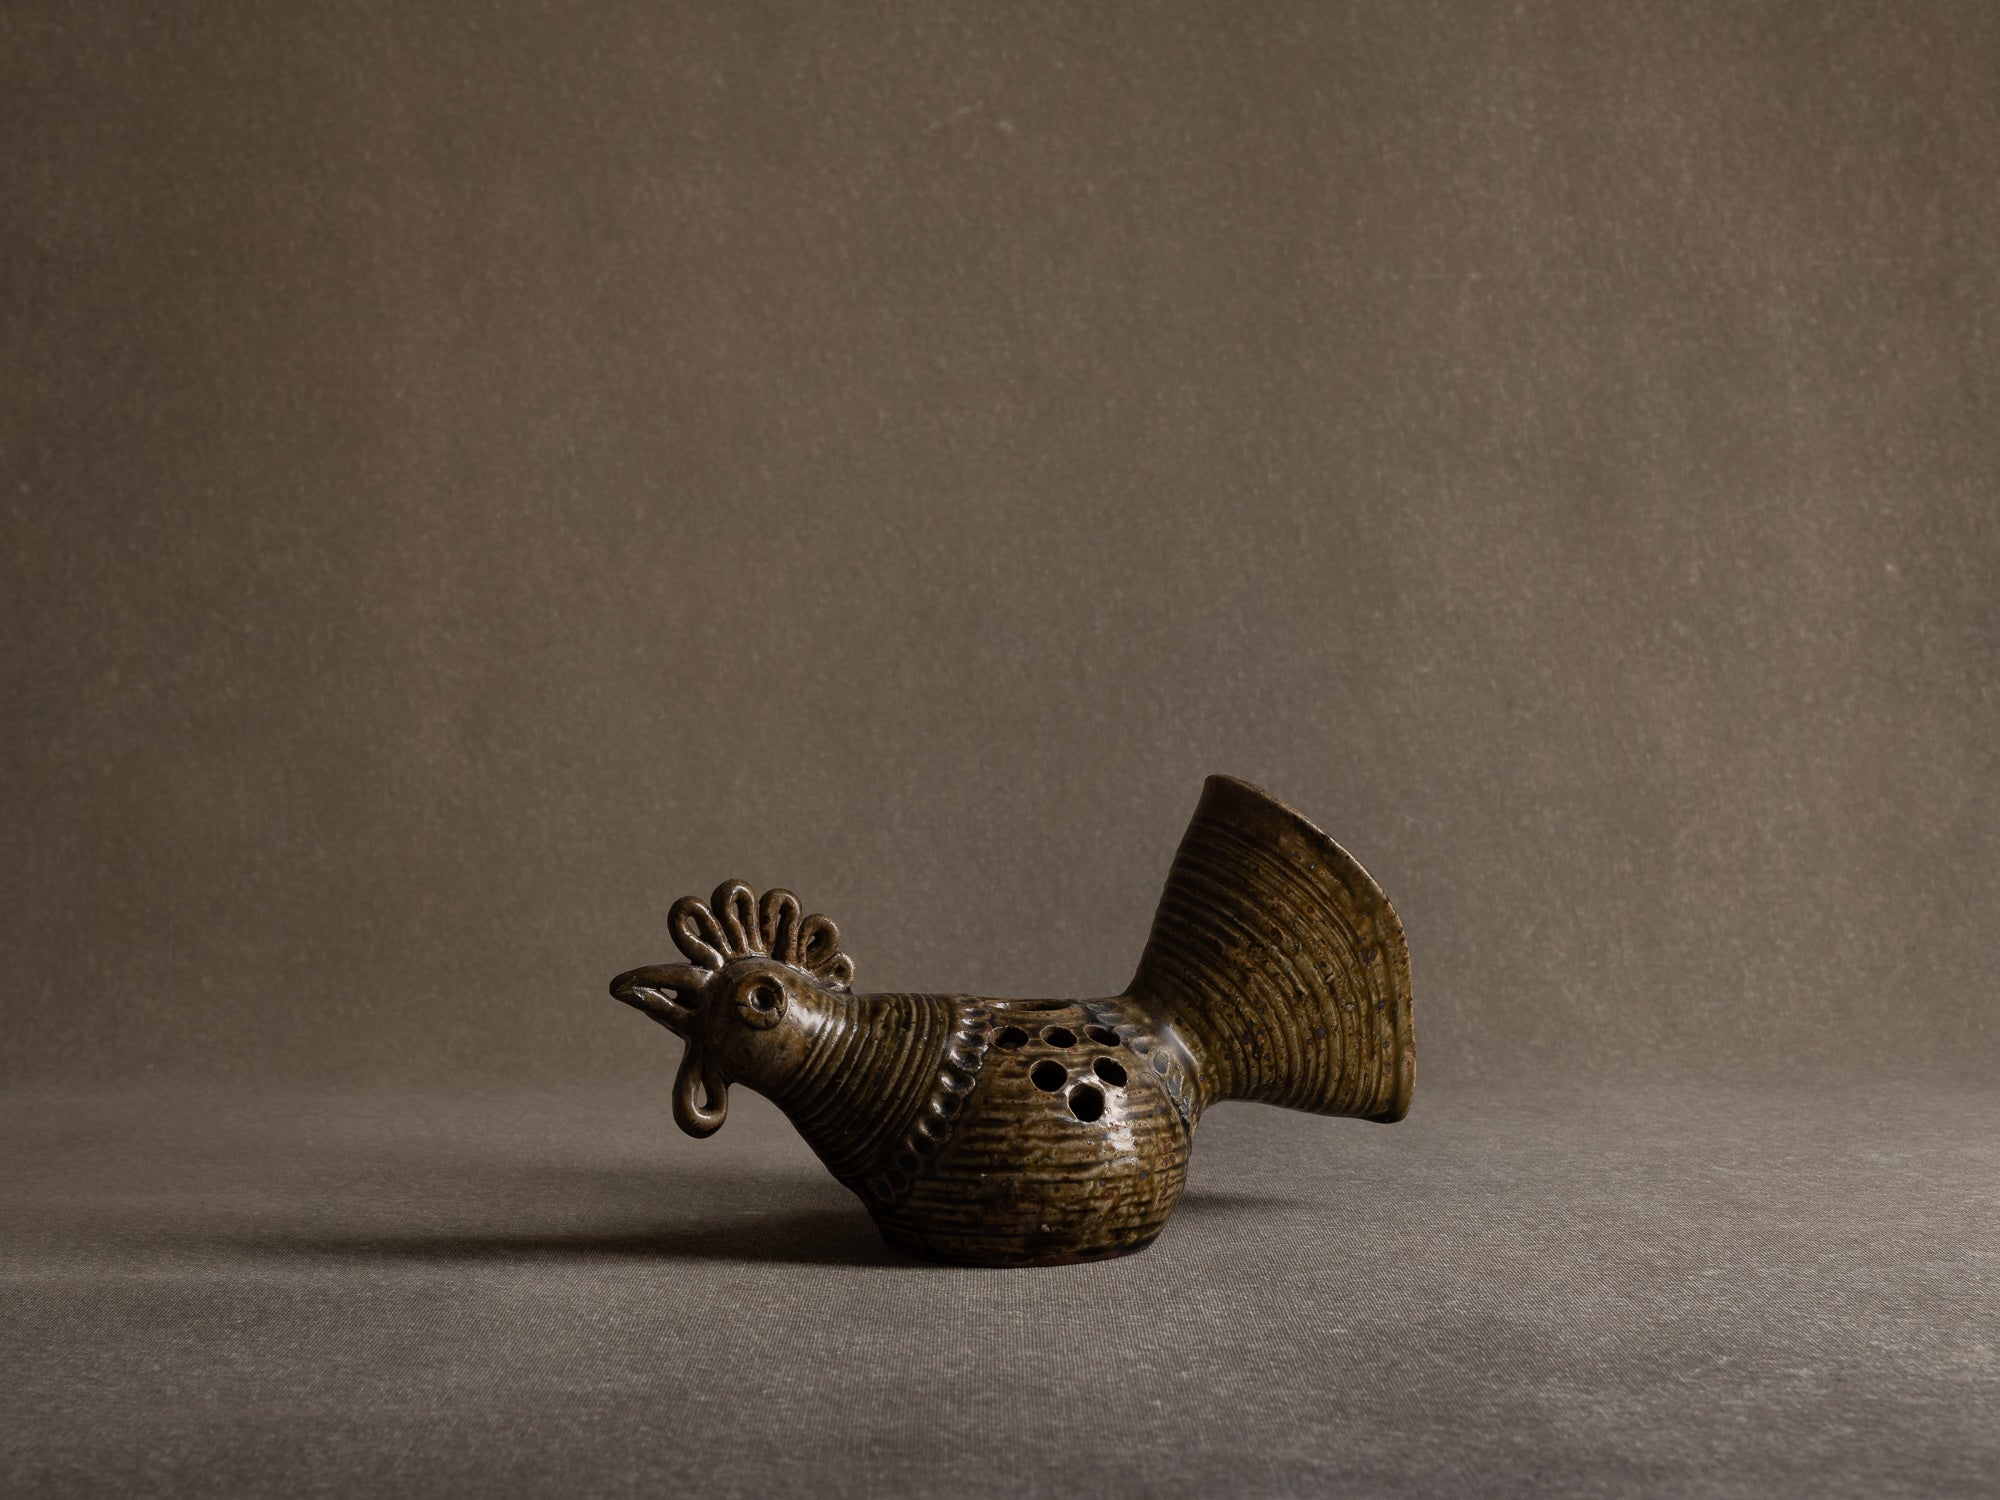 Vase sculptural / pique&#x2011;fleur zoomorphe d'André Rozay à La Borne, France (1945)..La Borne stoneware sculptural zoomorphic rooster-shaped vase by André Rozay, France (ca. 1945)